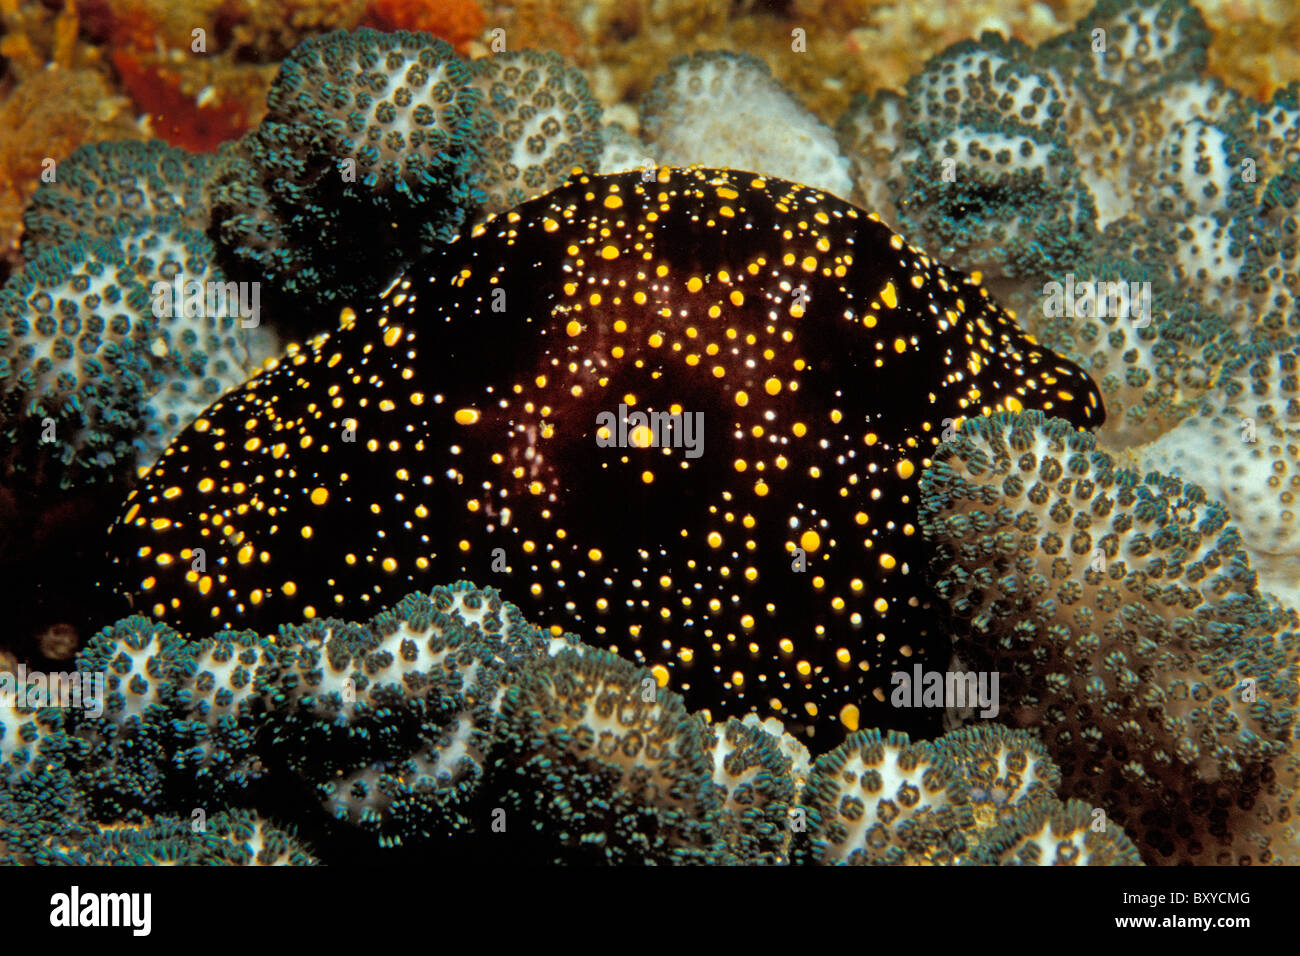 Lumaca Ovolid su Coral, Ovula ovum, dell'Oceano Indiano, Mozambico Foto Stock